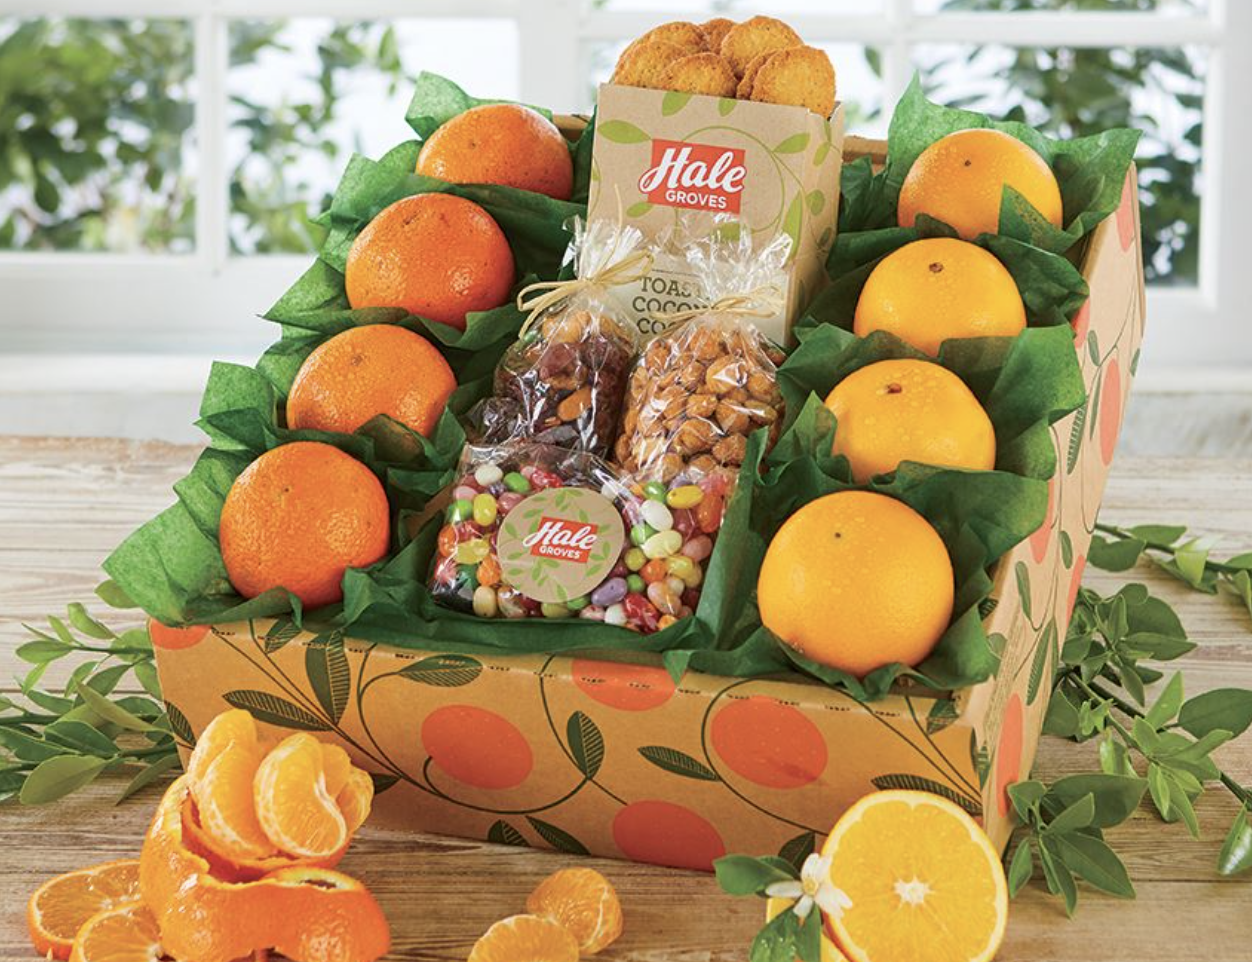 Hale Groves Oranges (Copy)